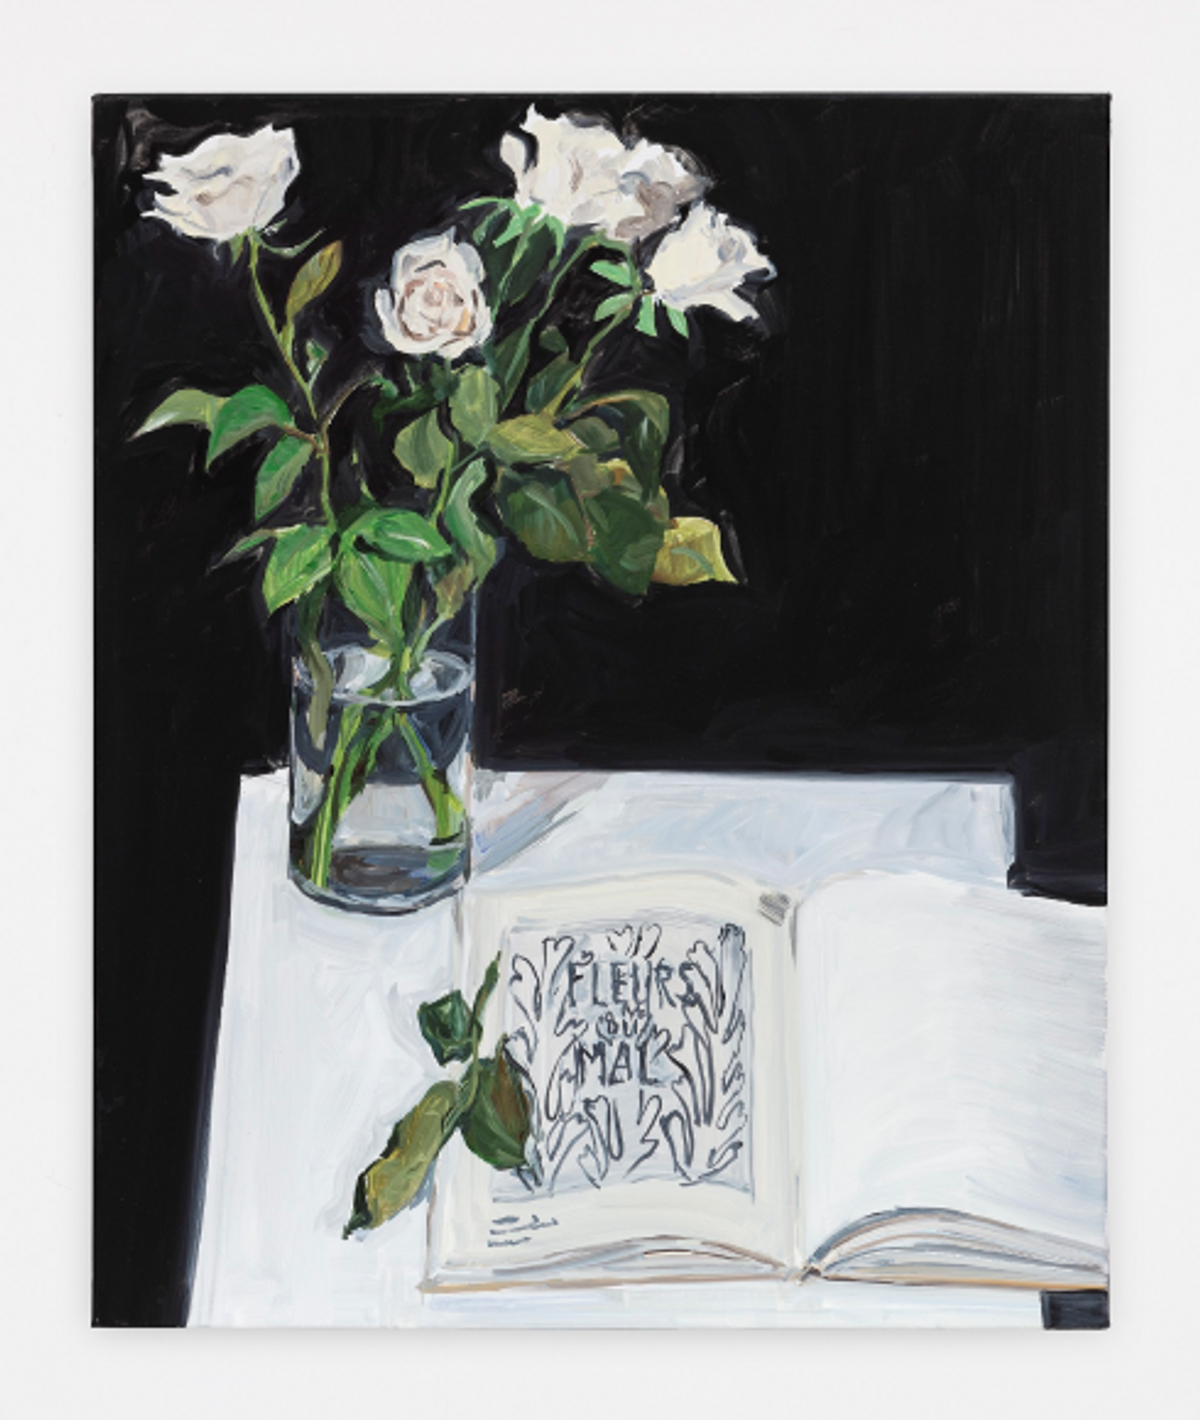 Jean-Philippe Delhomme, Roses et Matisse « Les fleurs du mal », 2023, huile sur toile, 65 cm × 54 cm. Courtesy de l’artiste et de la galerie Perrotin